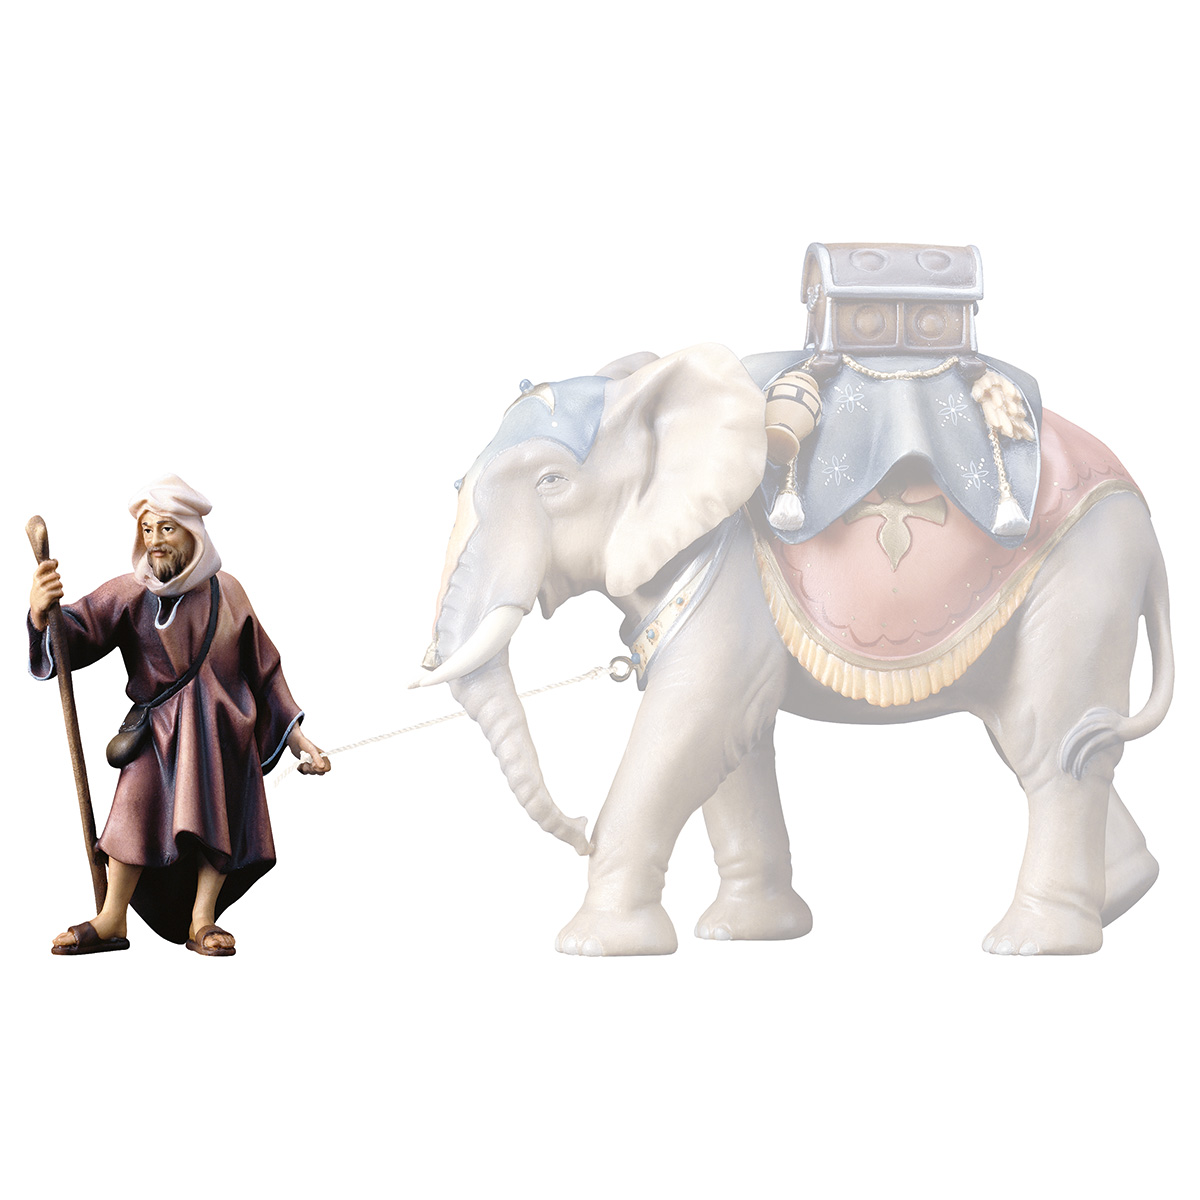 Elefantentreiber stehend (passend zu Elefant stehend)